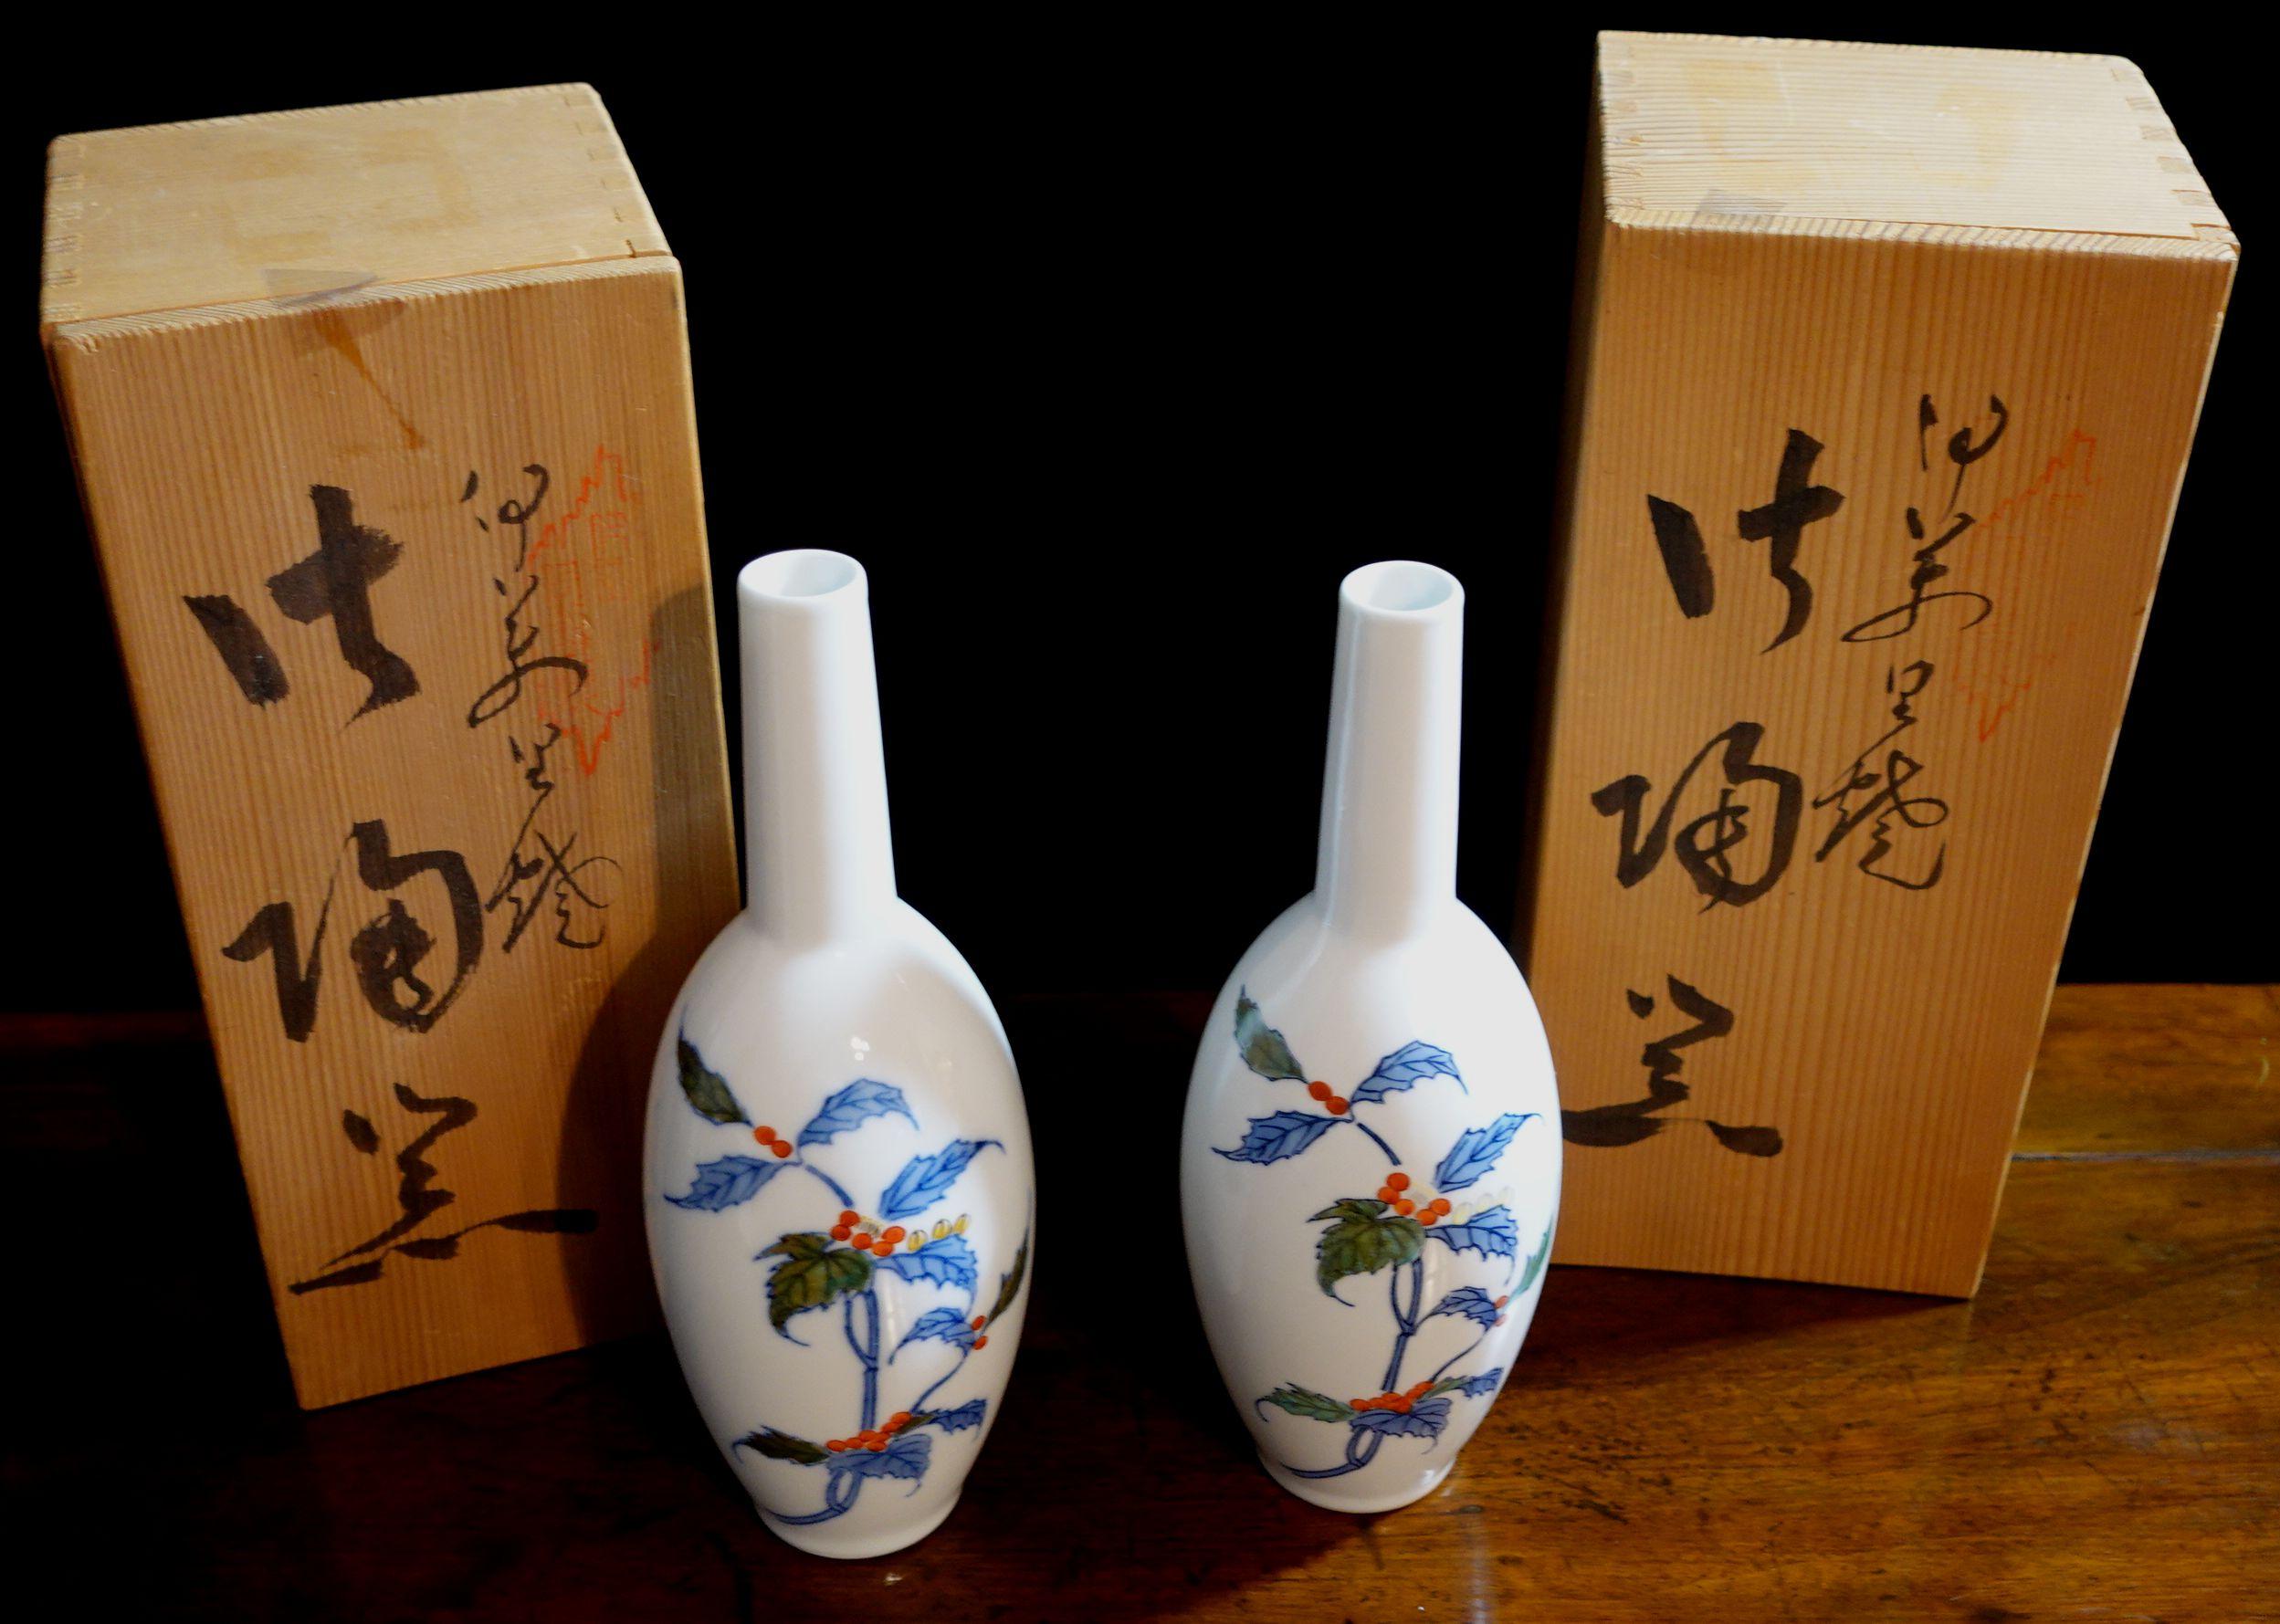 Pair of Japanese Imari Porcelain Sake Bottles, Mid 20th Century For Sale 3